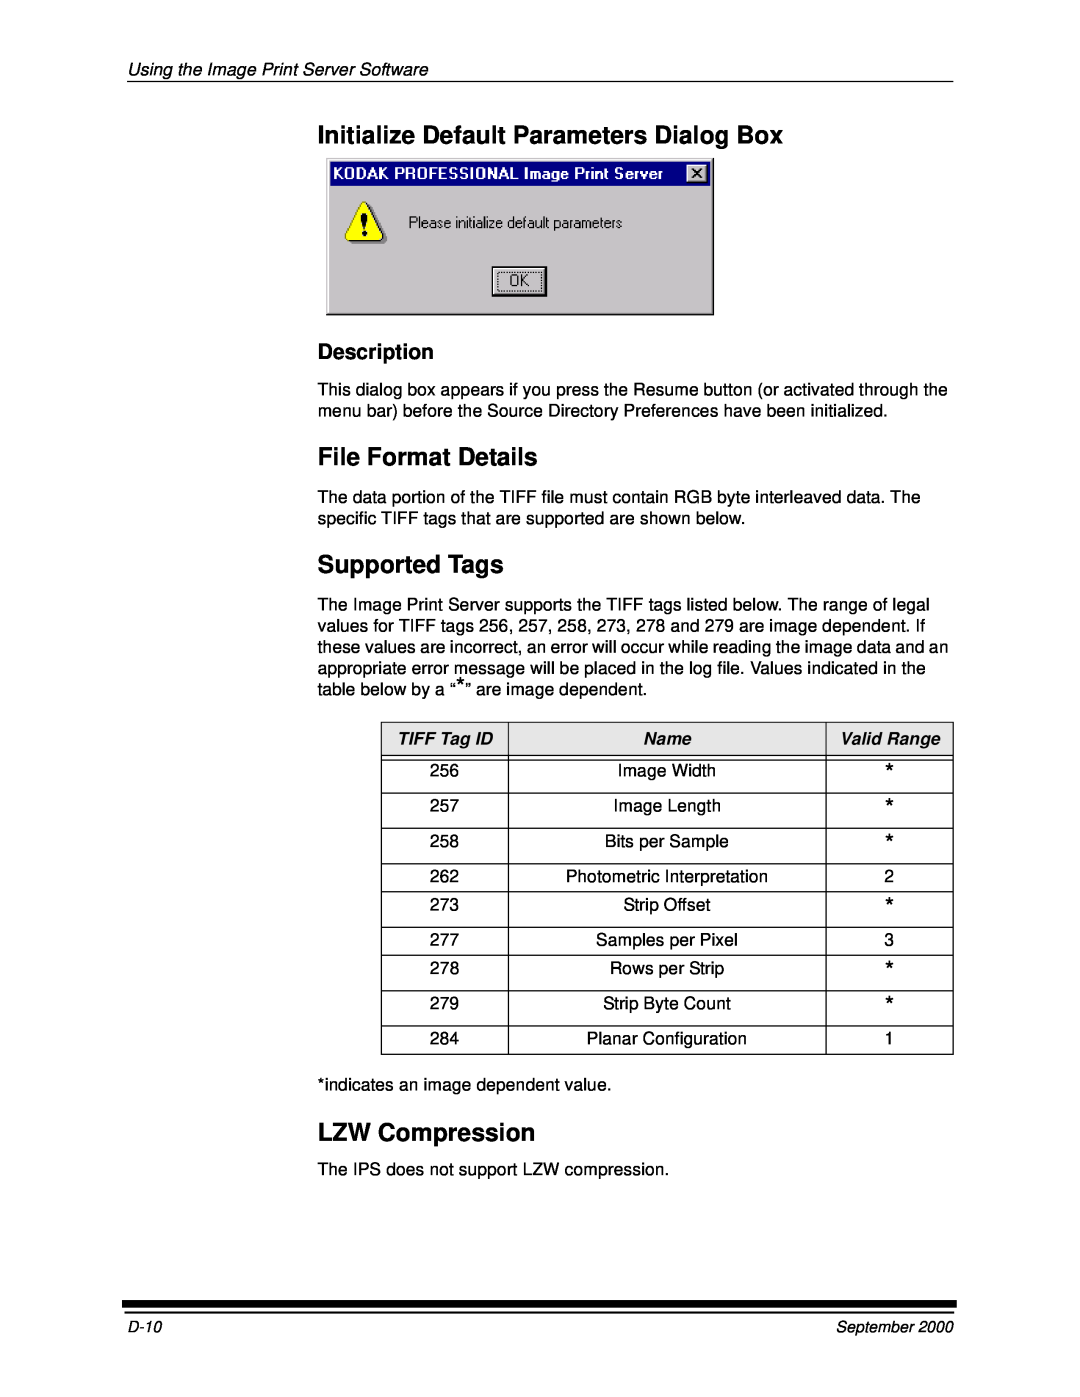 Kodak 20P Initialize Default Parameters Dialog Box, File Format Details, Supported Tags, LZW Compression, Description 